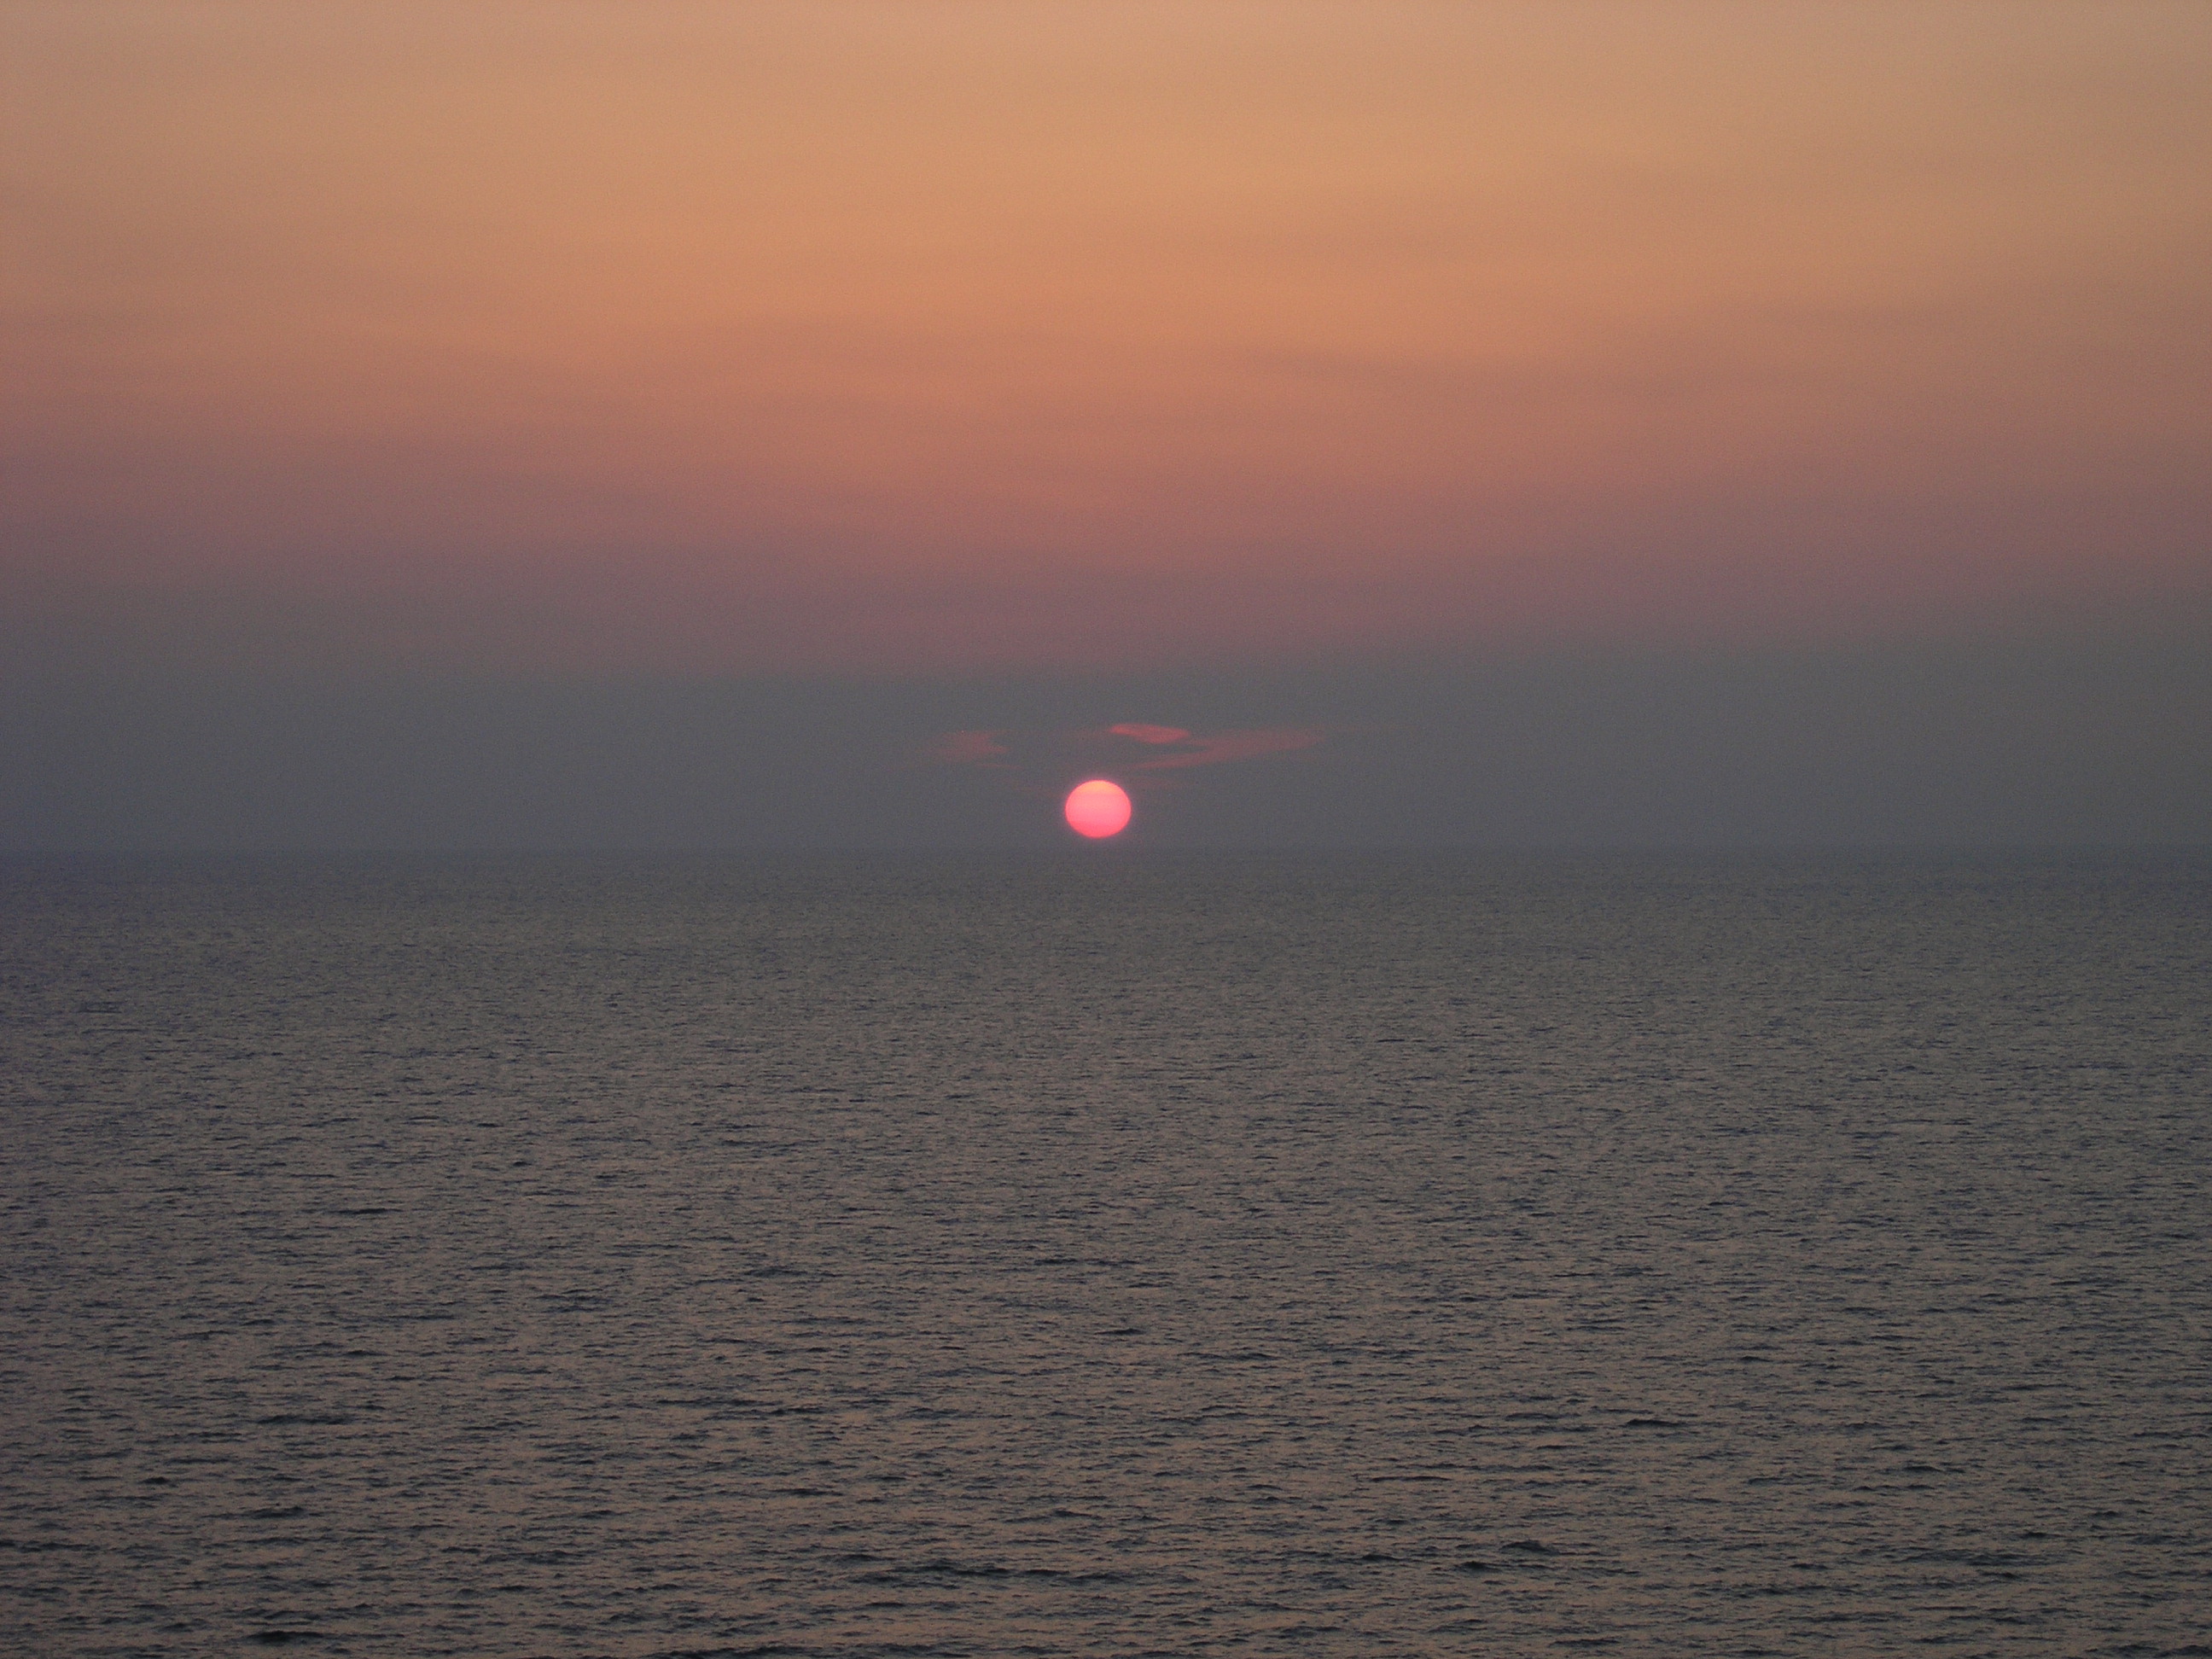 Sunset taken off Royal Carribean Cruise